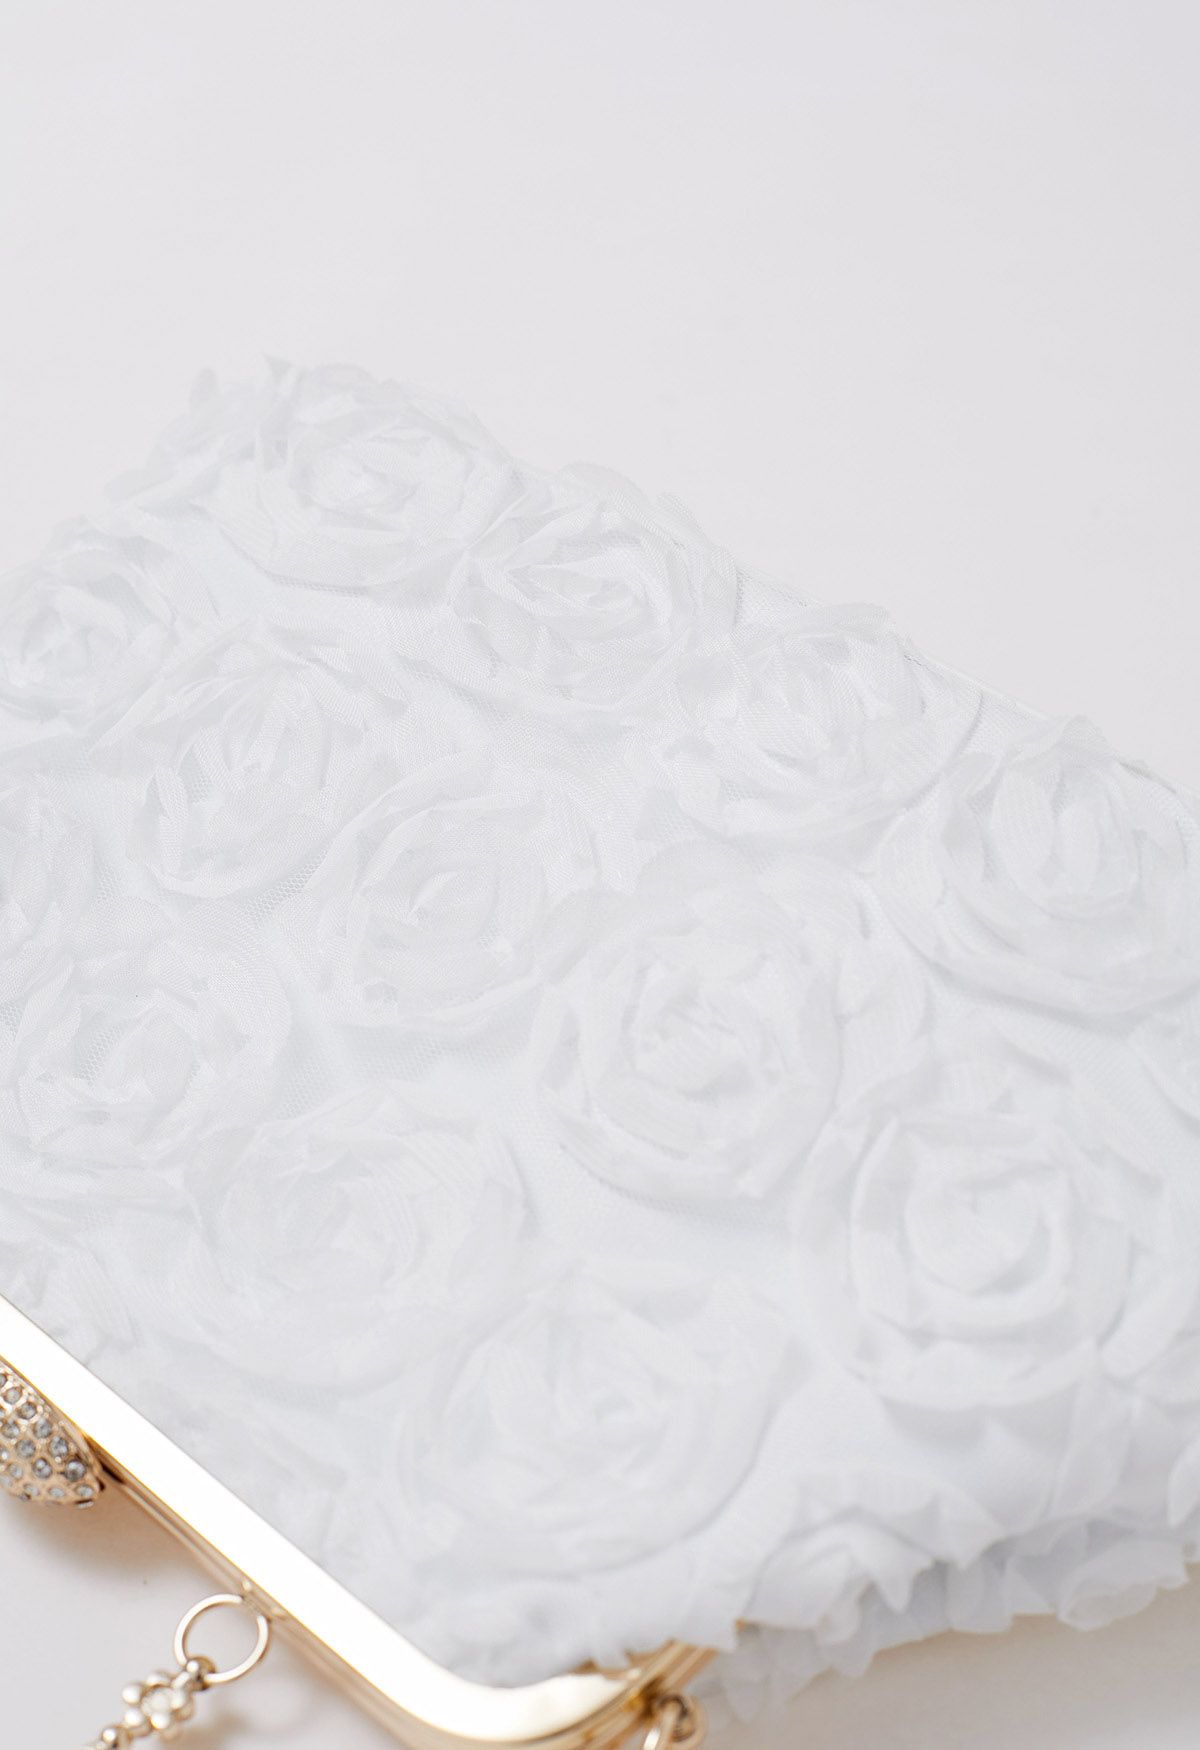 Elegant Rose Petal Clutch in White